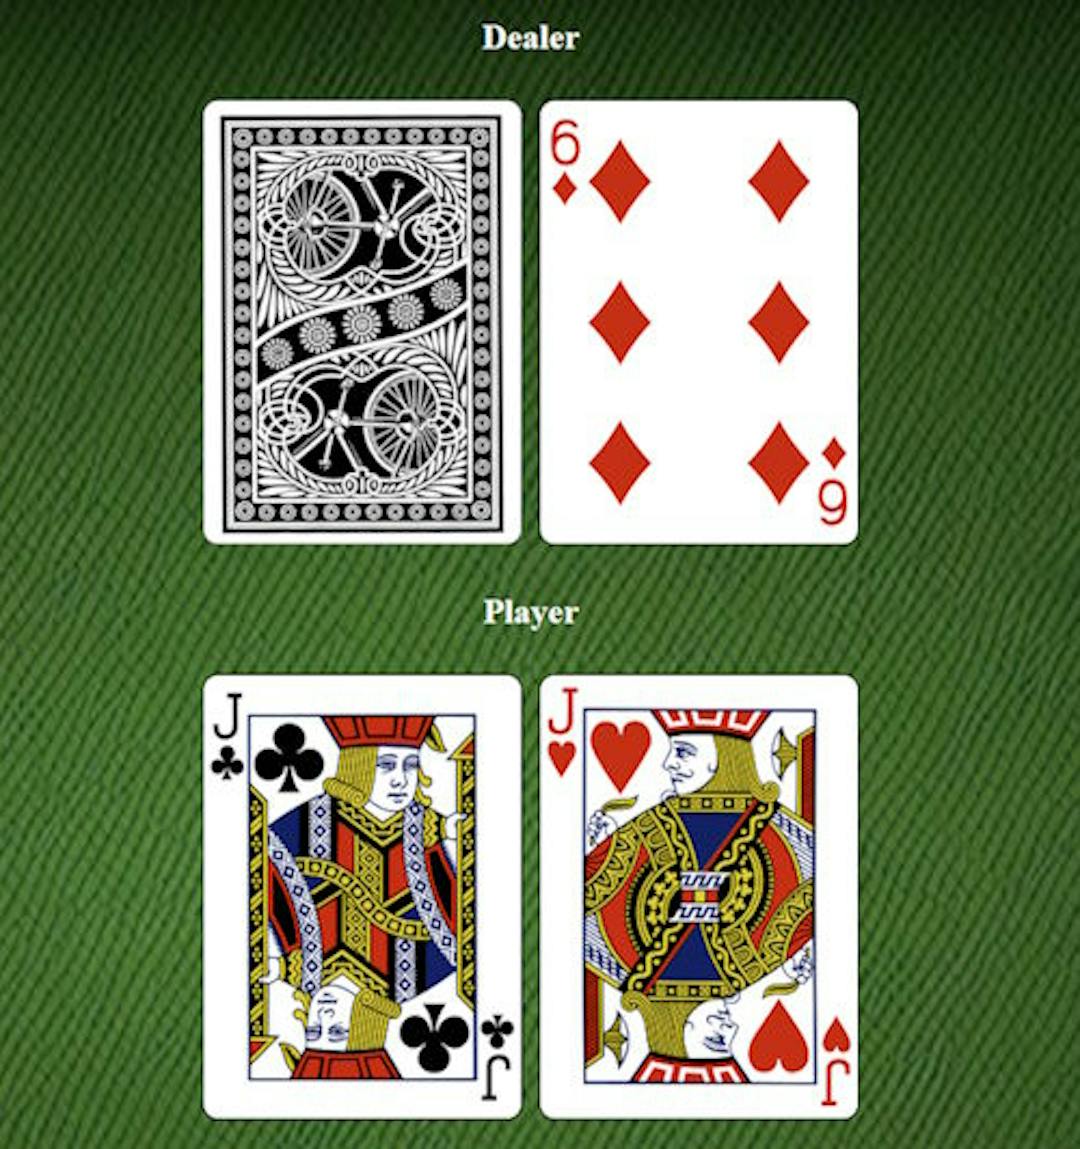 Blackjack game with the dealer having 6 showing and I have 2 Jacks